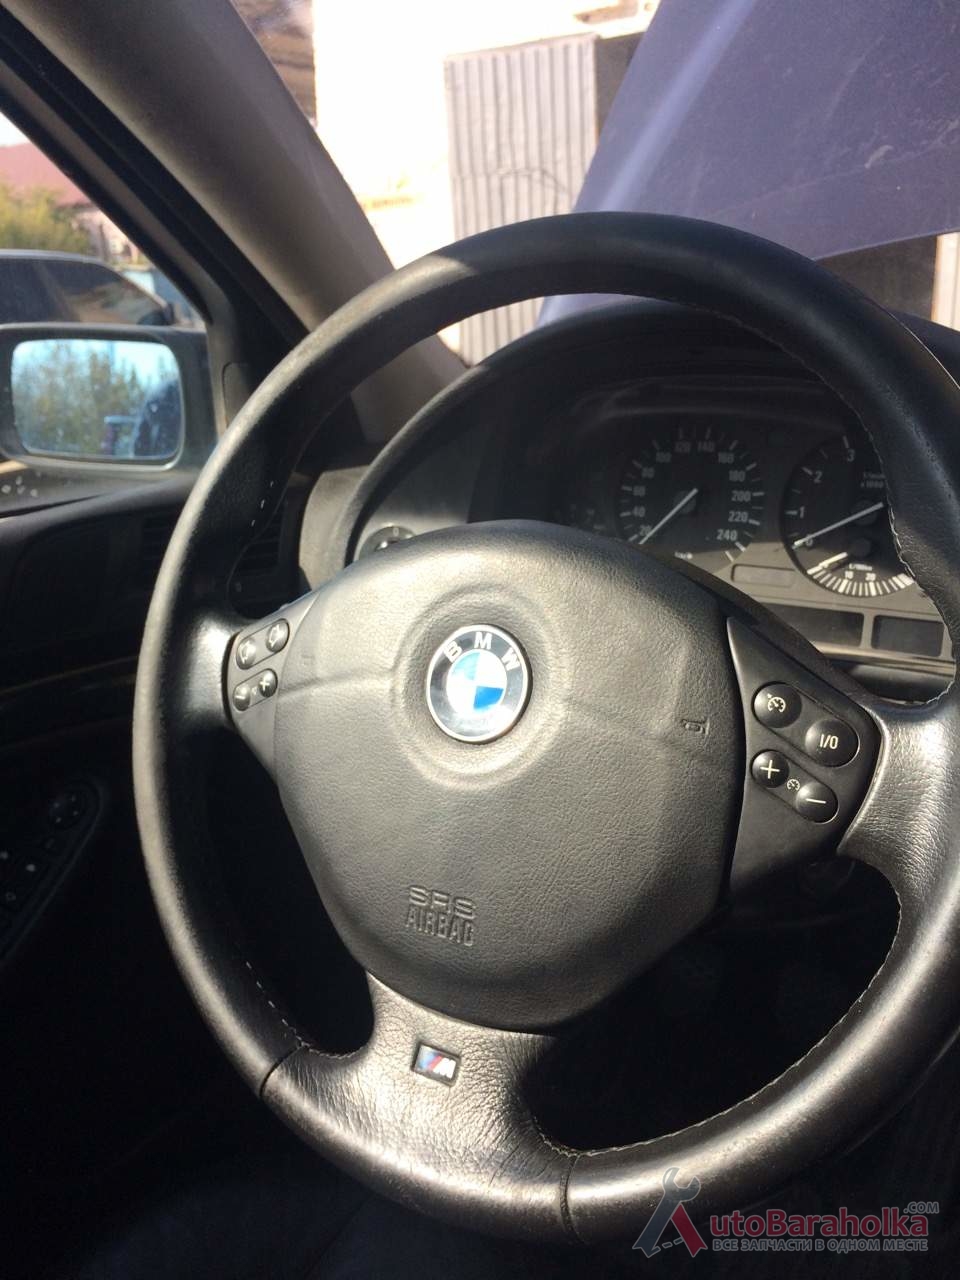 Продам М-руль BMW E39 , руль БМВ Е39 Киев